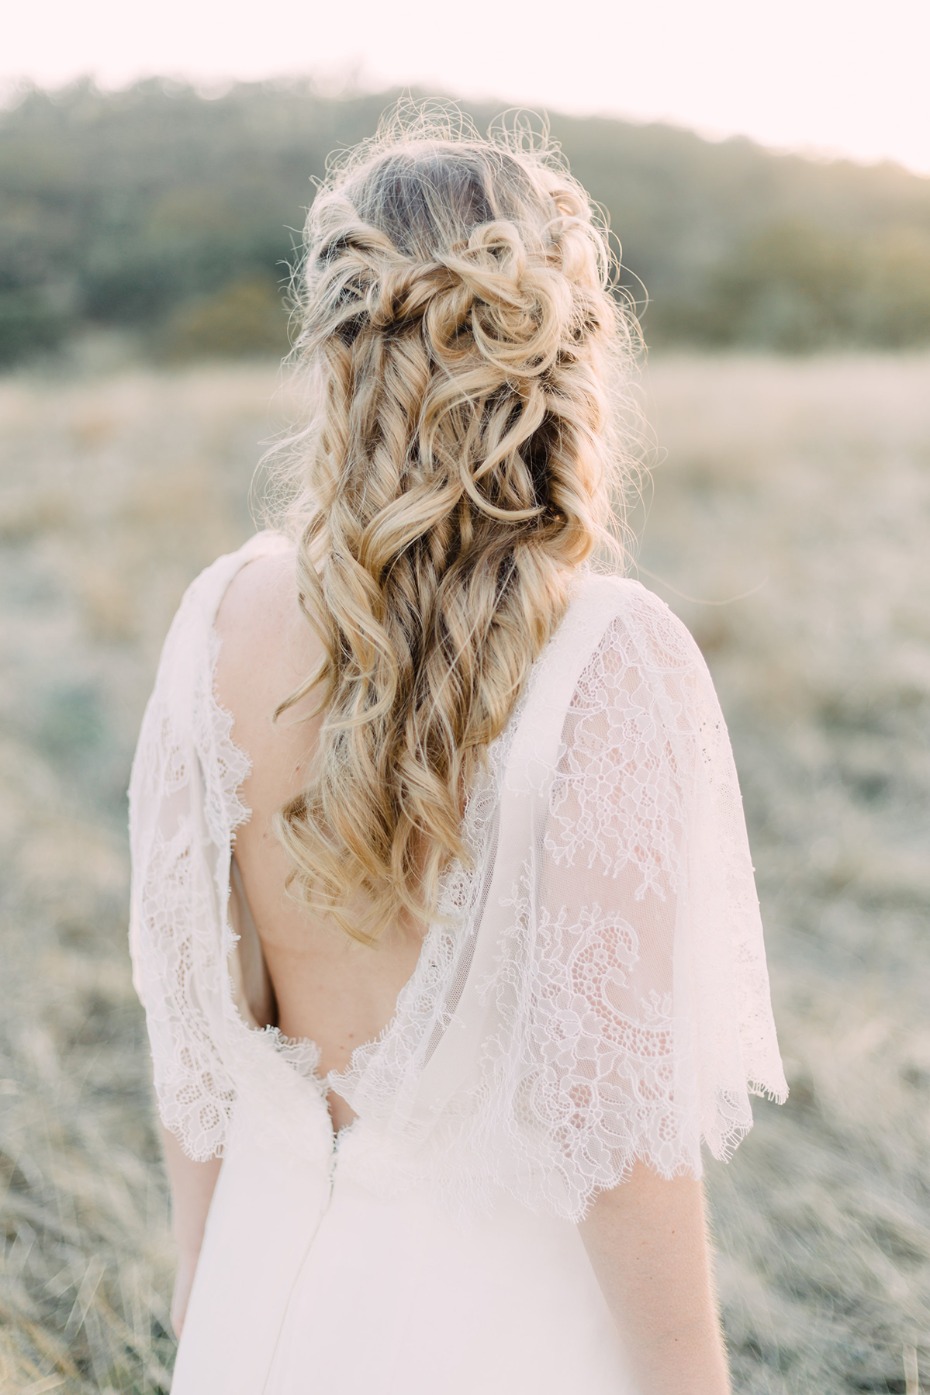 Bridal hair goals